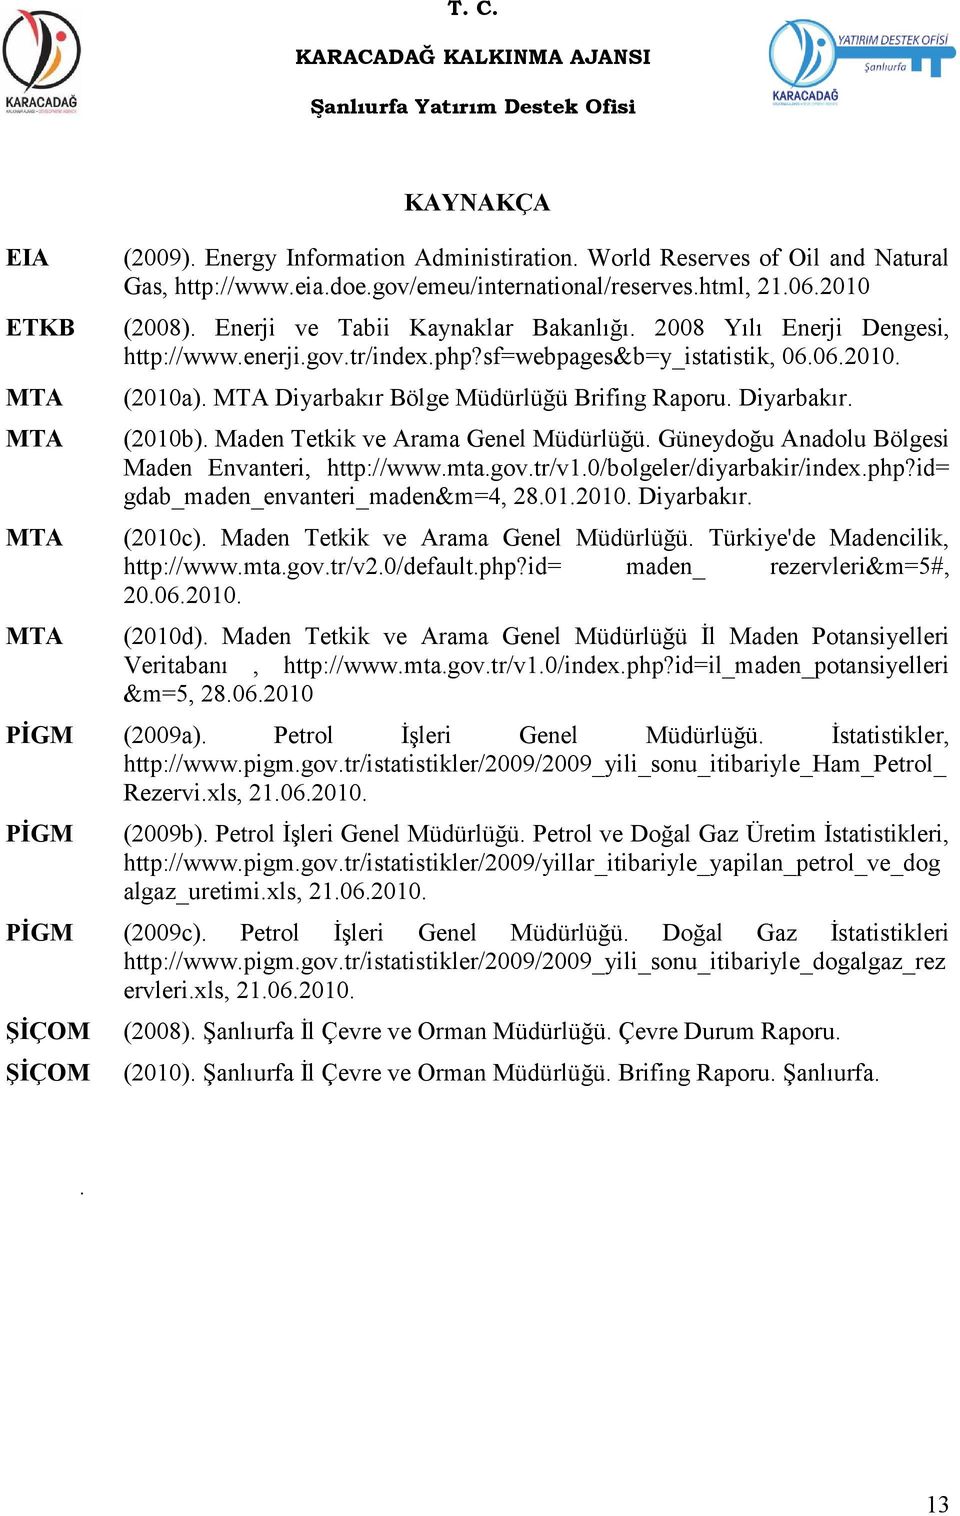 Diyarbakır. (2010b). Maden Tetkik ve Arama Genel Müdürlüğü. Güneydoğu Anadolu Bölgesi Maden Envanteri, http://www.mta.gov.tr/v1.0/bolgeler/diyarbakir/index.php?id= gdab_maden_envanteri_maden&m=4, 28.